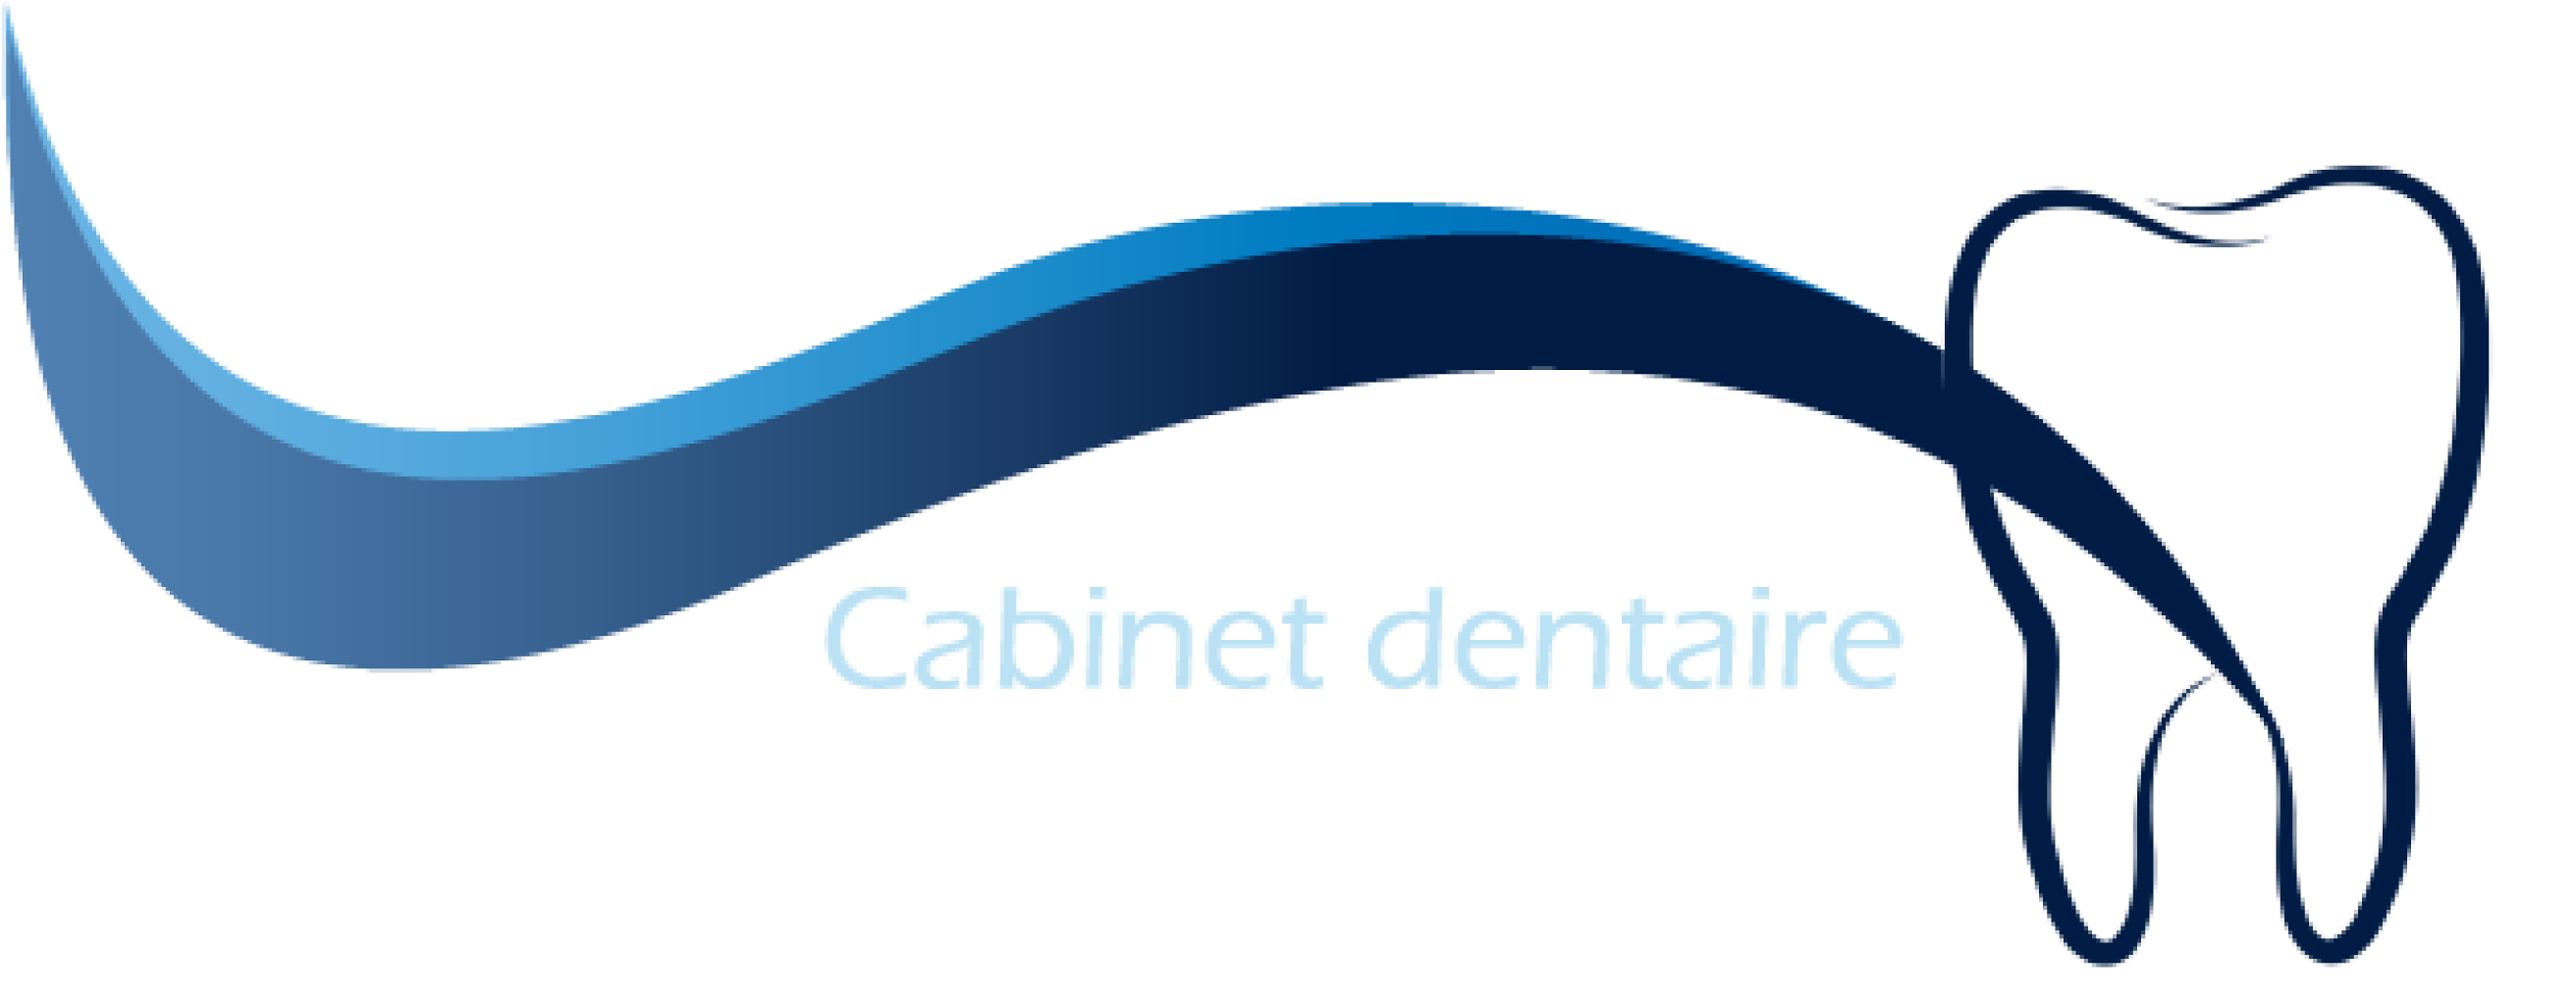 Cabinet dentaire Véronique Métral